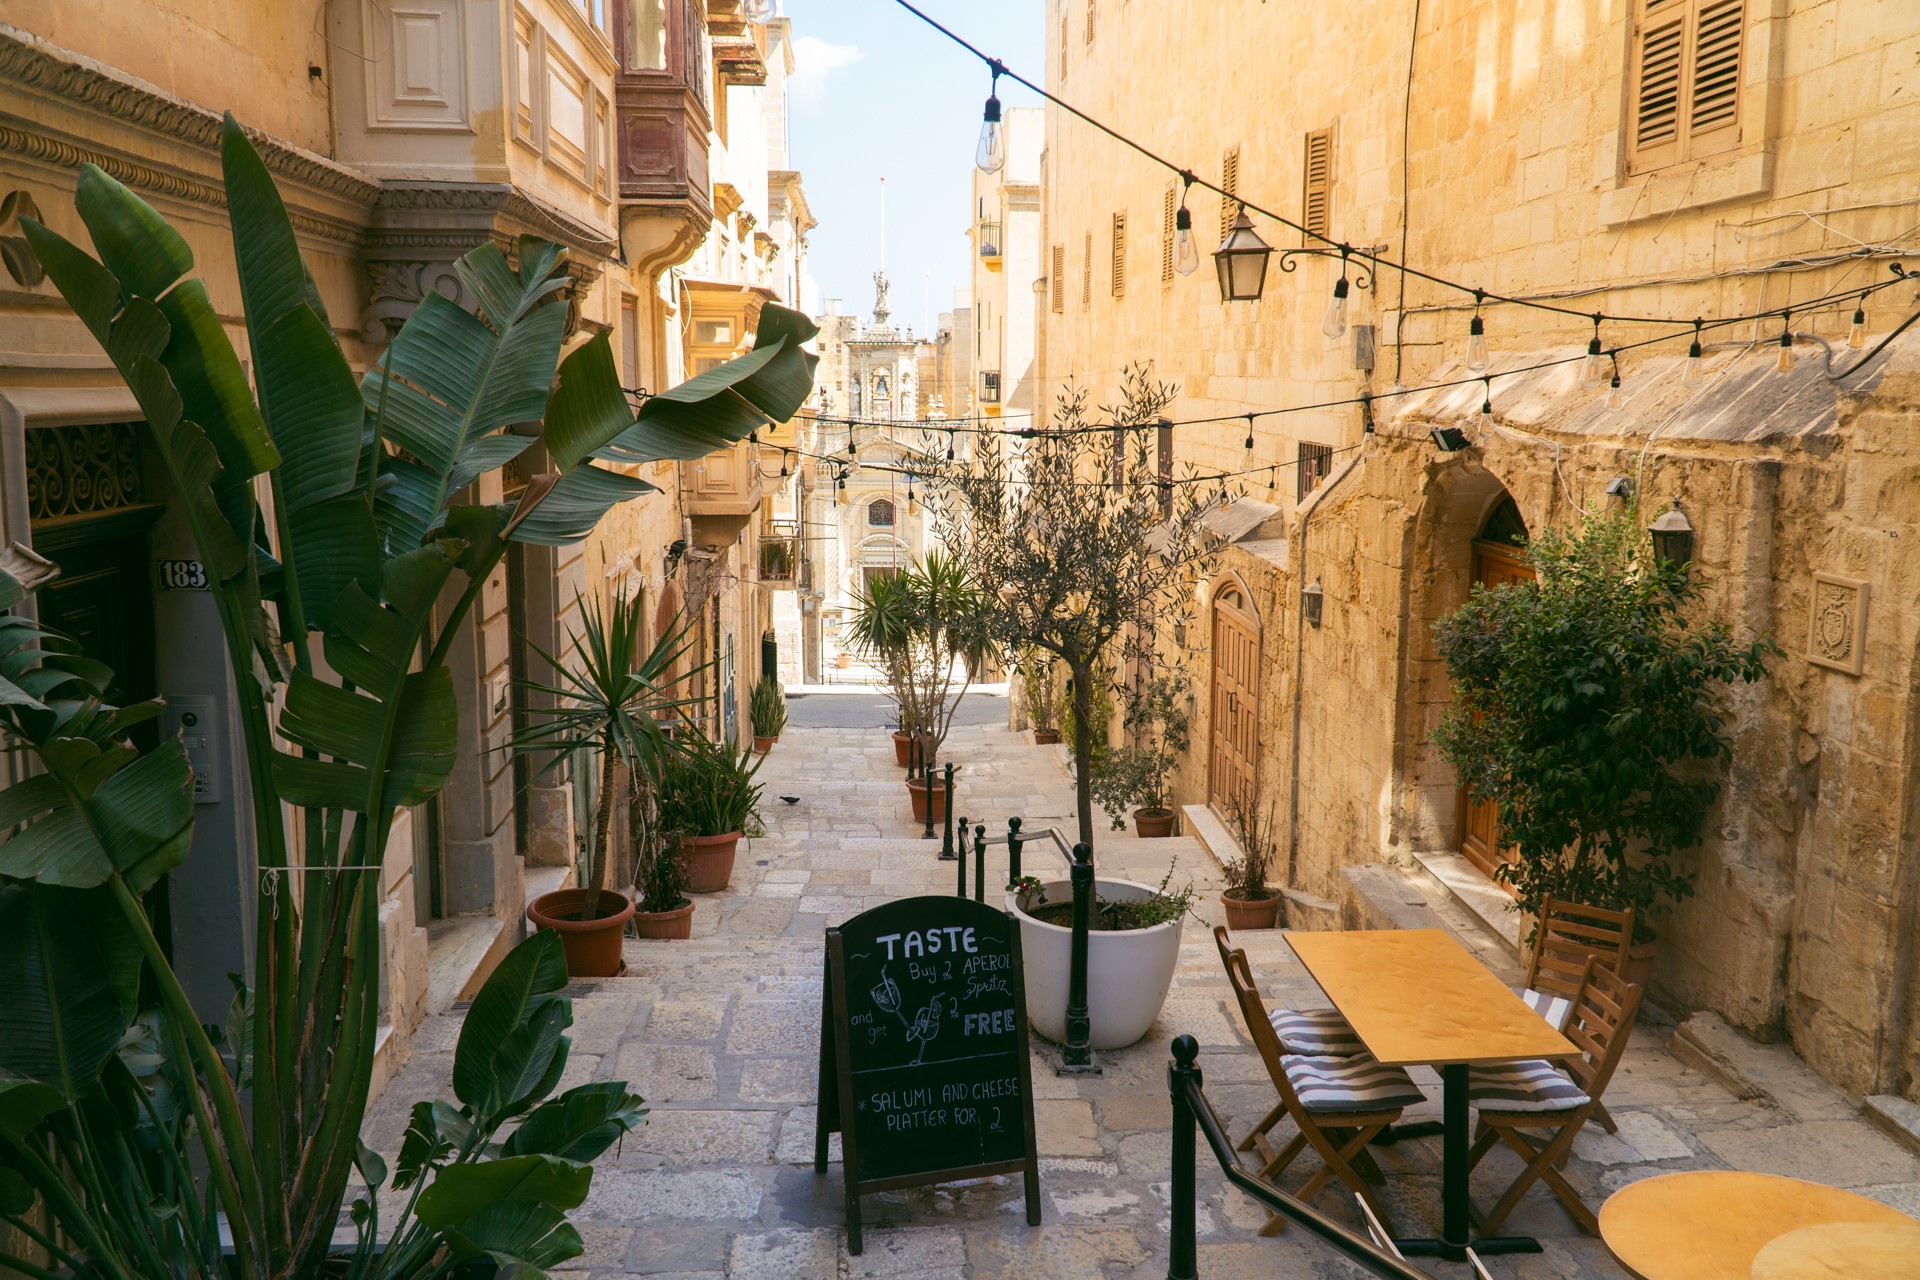 Plan wyjazdu na Maltę